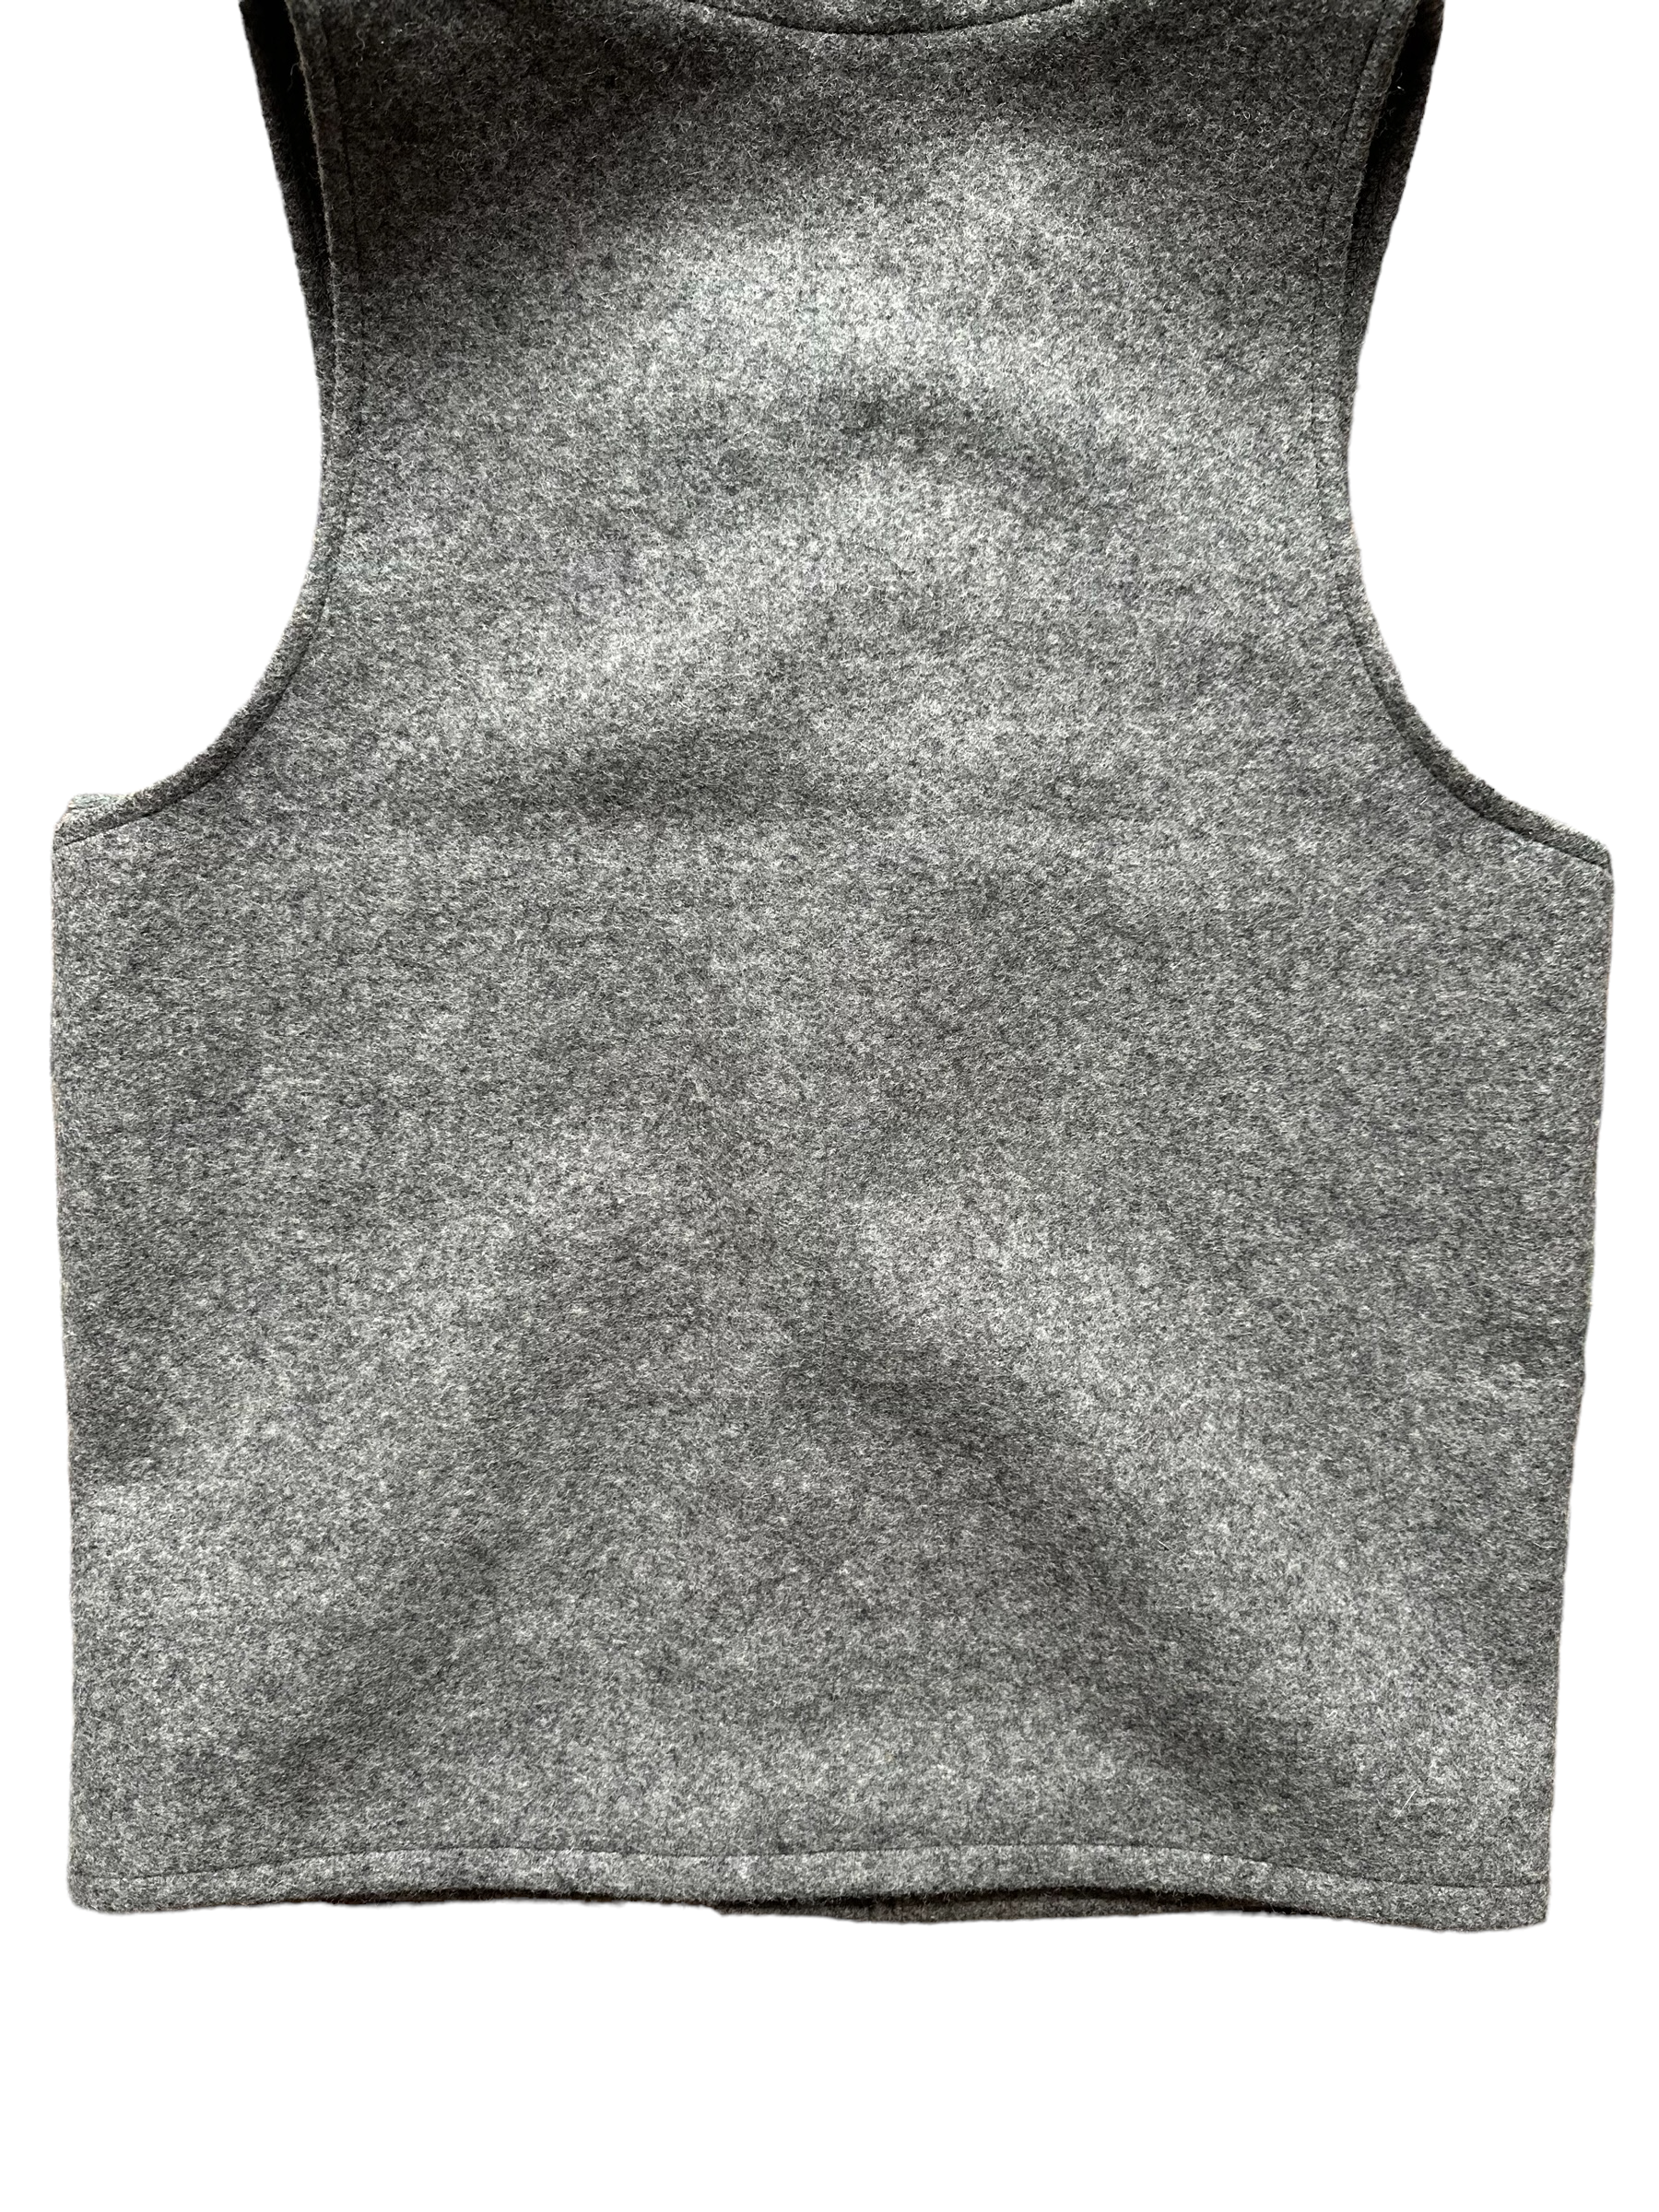 Lower Rear View  of Vintage Filson Mackinaw Vest SZ 36 |  Grey Wool Vest | Seattle Vintage Workwear